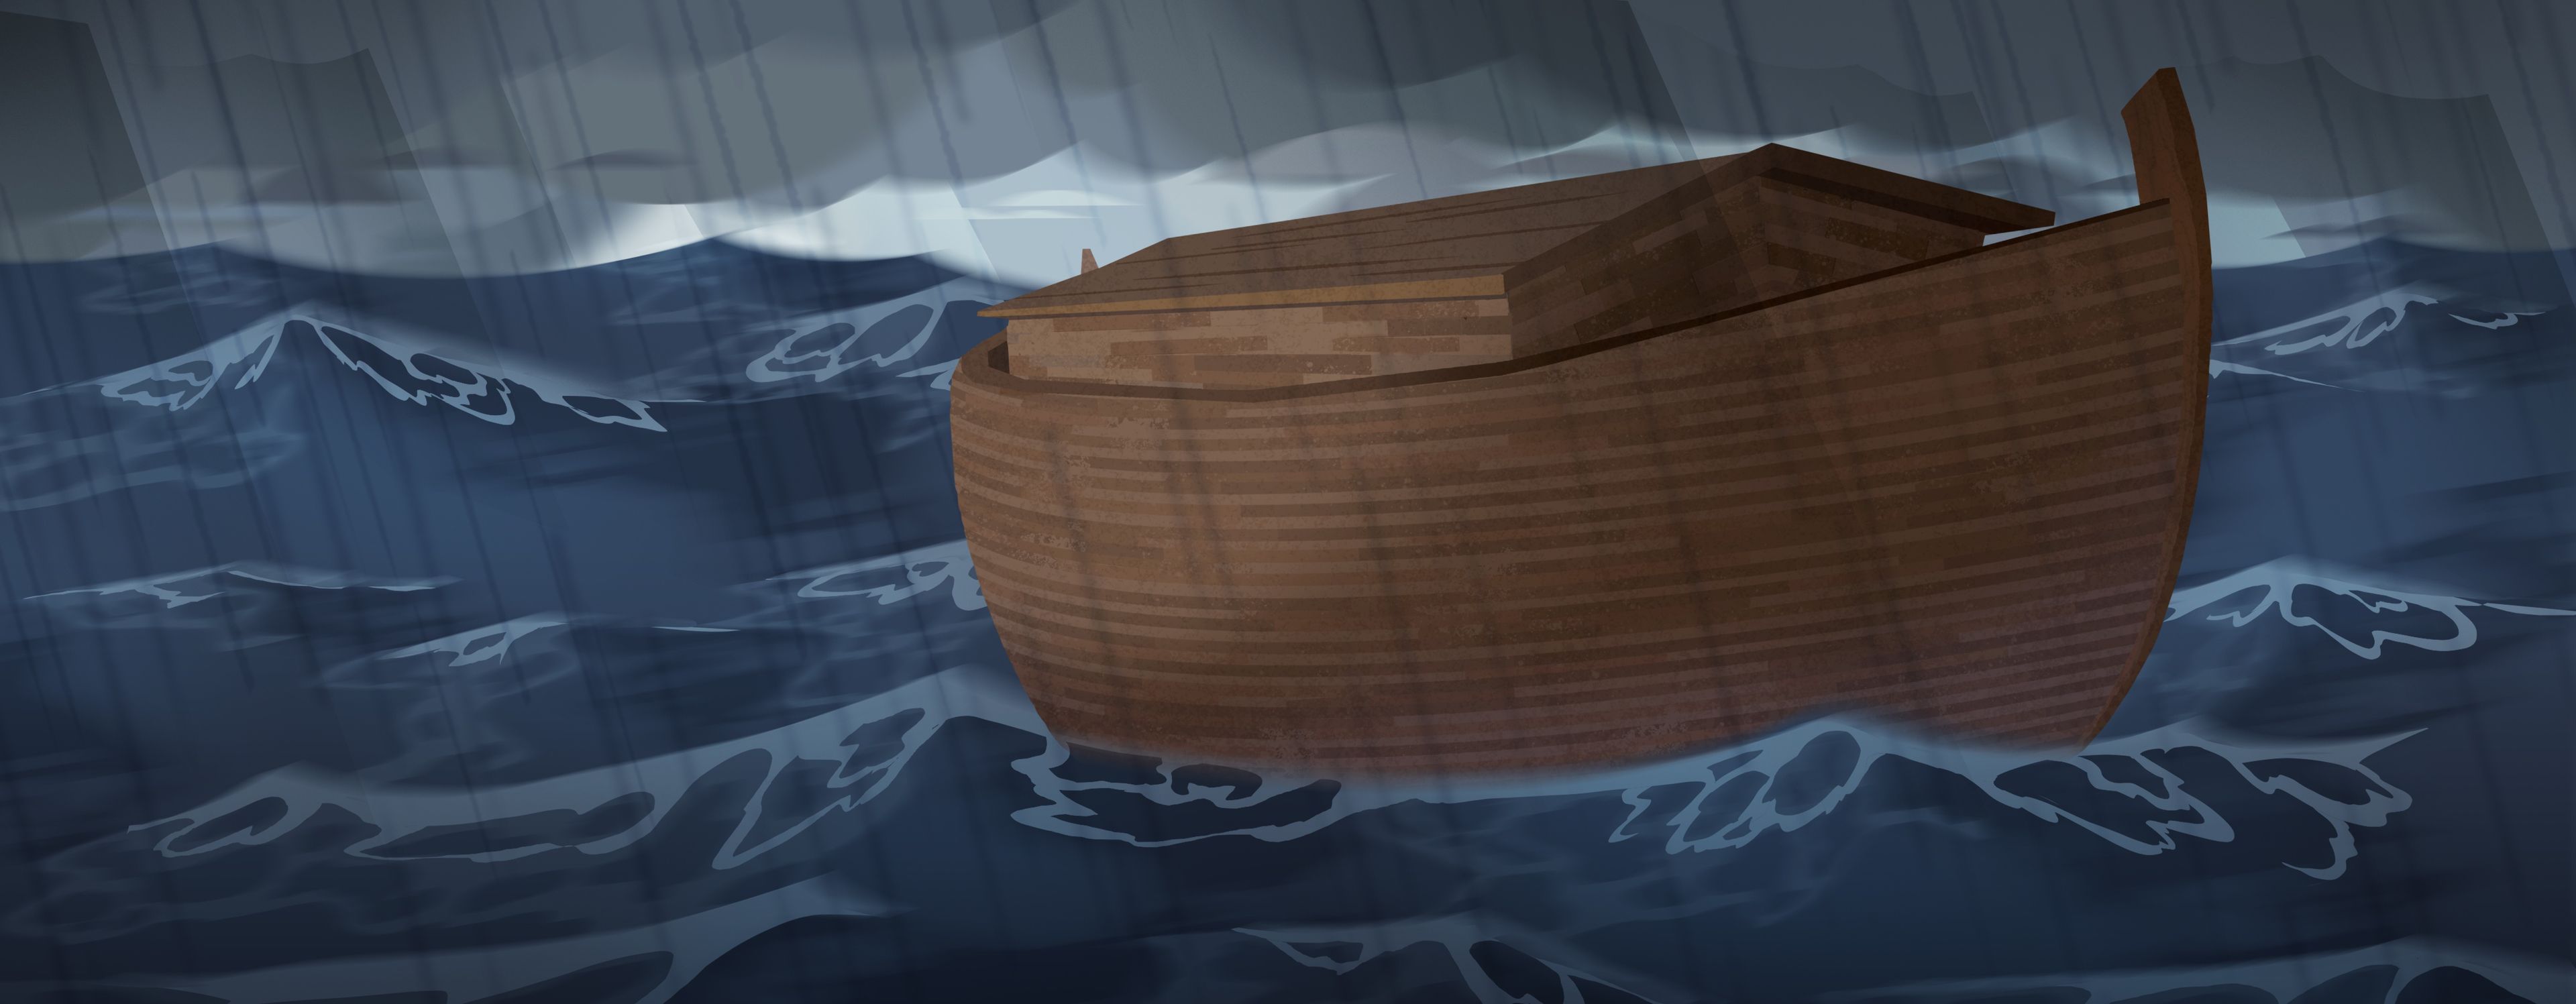 삽화: 바다 위를 떠다니는 방주 
창세기 7:6~23